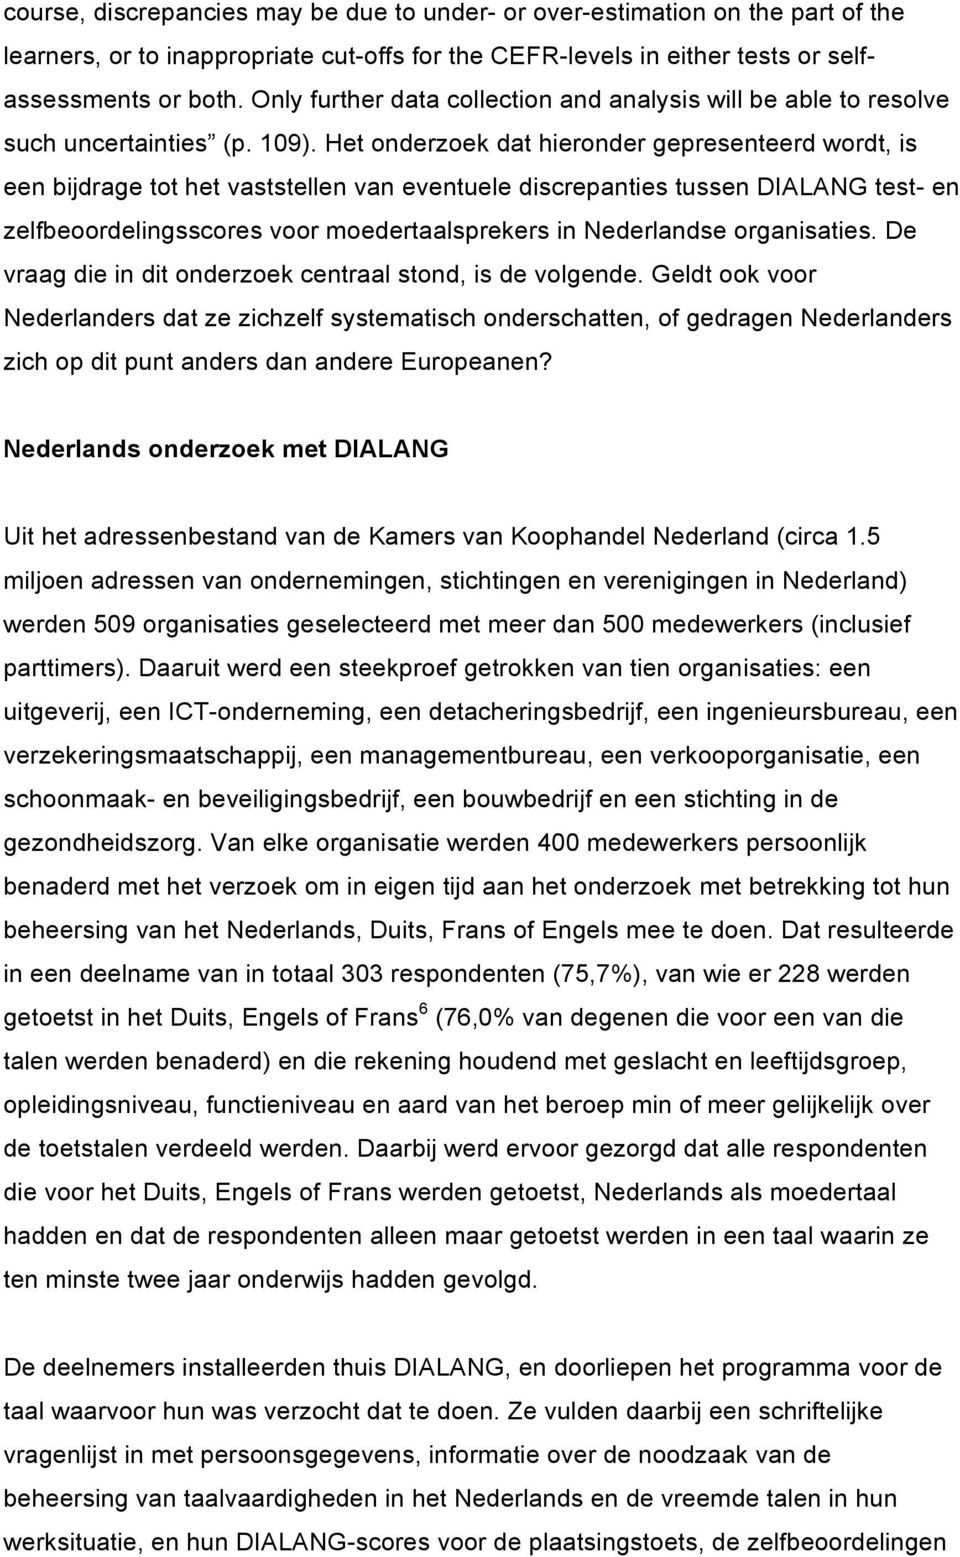 Het onderzoek dat hieronder gepresenteerd wordt, is een bijdrage tot het vaststellen van eventuele discrepanties tussen DIALANG test- en zelfbeoordelingsscores voor moedertaalsprekers in Nederlandse